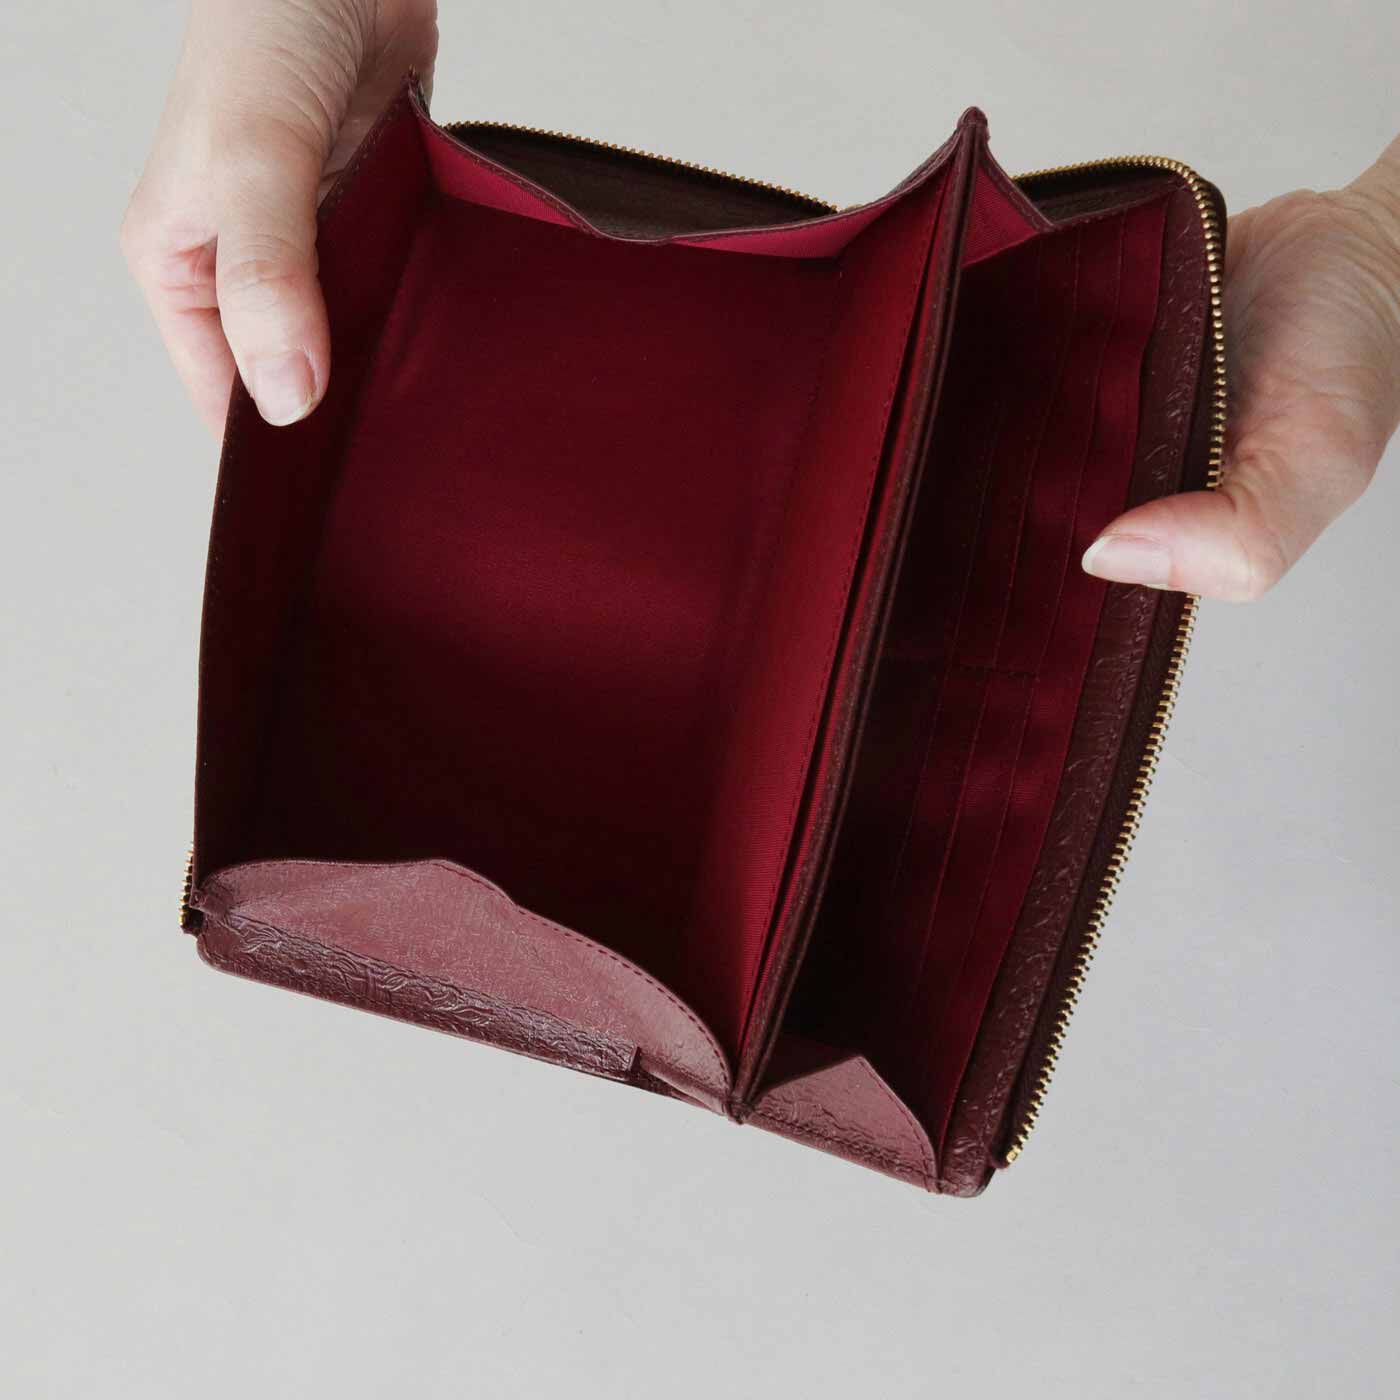 ＆Stories|財布職人と作った 職人本革のスリムギャルソン財布〈ガーネット〉[本革　財布：日本製]|ワンアクションですべての機能が使える、これまでにないお財布になっています。